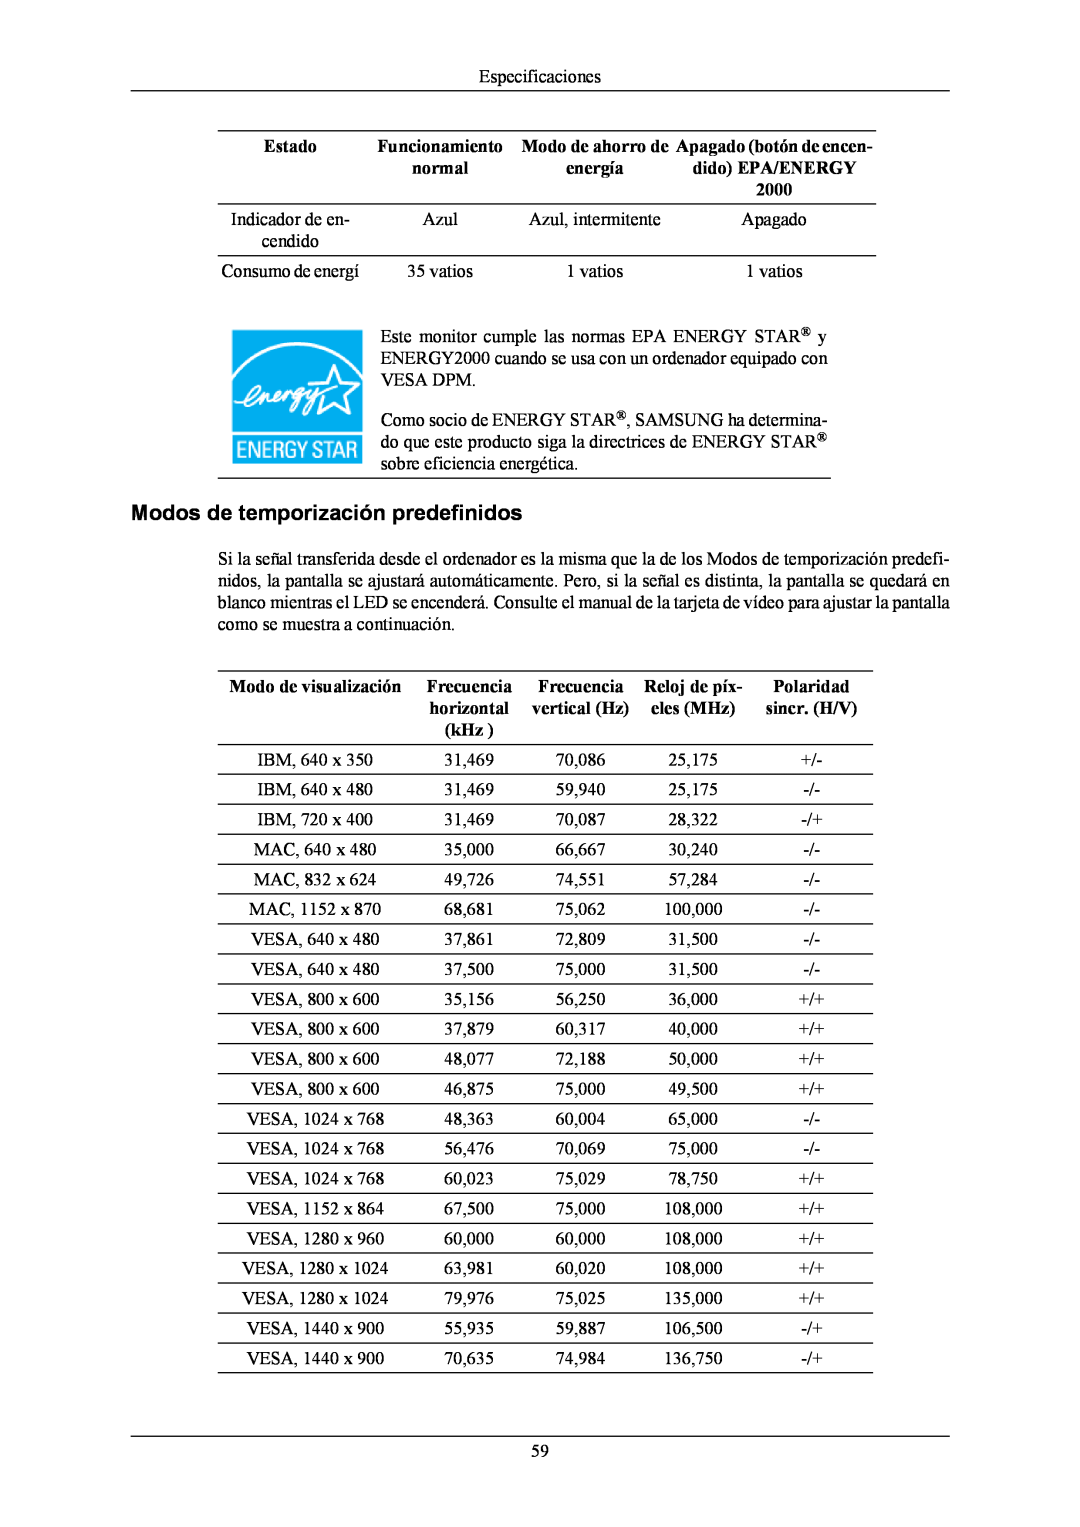 Samsung LS19MYNKF/EDC, LS19MYNKSB/EDC manual Modos de temporización predefinidos, 2000, Apagado, cendido, Consumo de energí 